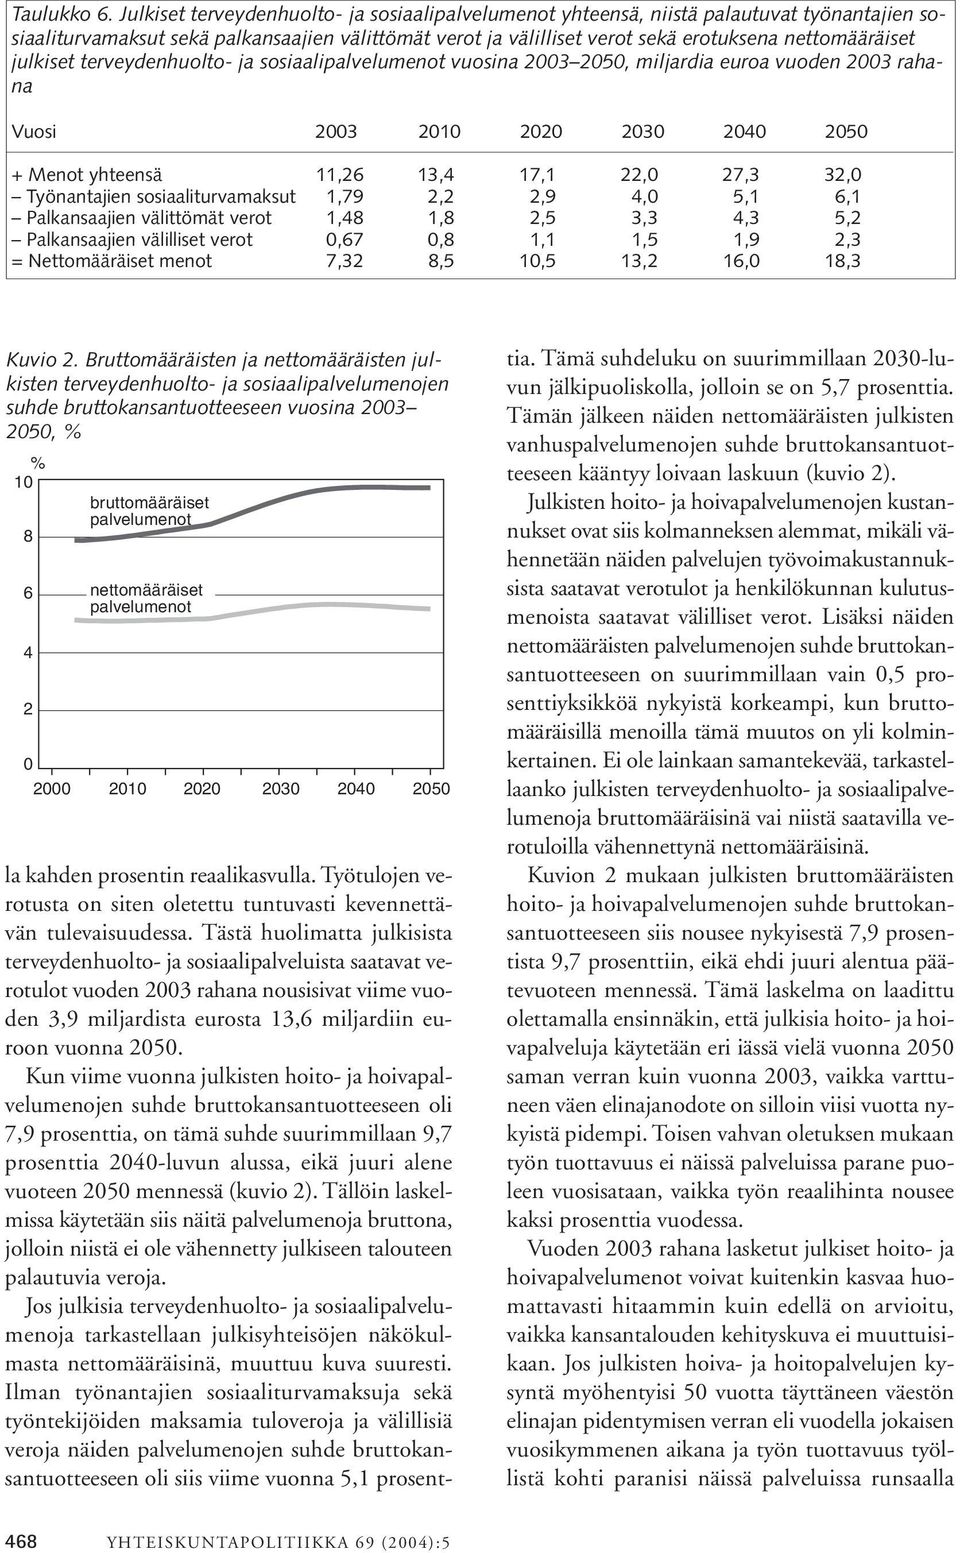 julkiset terveydenhuolto- ja sosiaalipalvelumenot vuosina 2003 2050, miljardia euroa vuoden 2003 rahana Vuosi 2003 2010 2020 2030 2040 2050 + Menot yhteensä 11,26 13,4 17,1 22,0 27,3 32,0